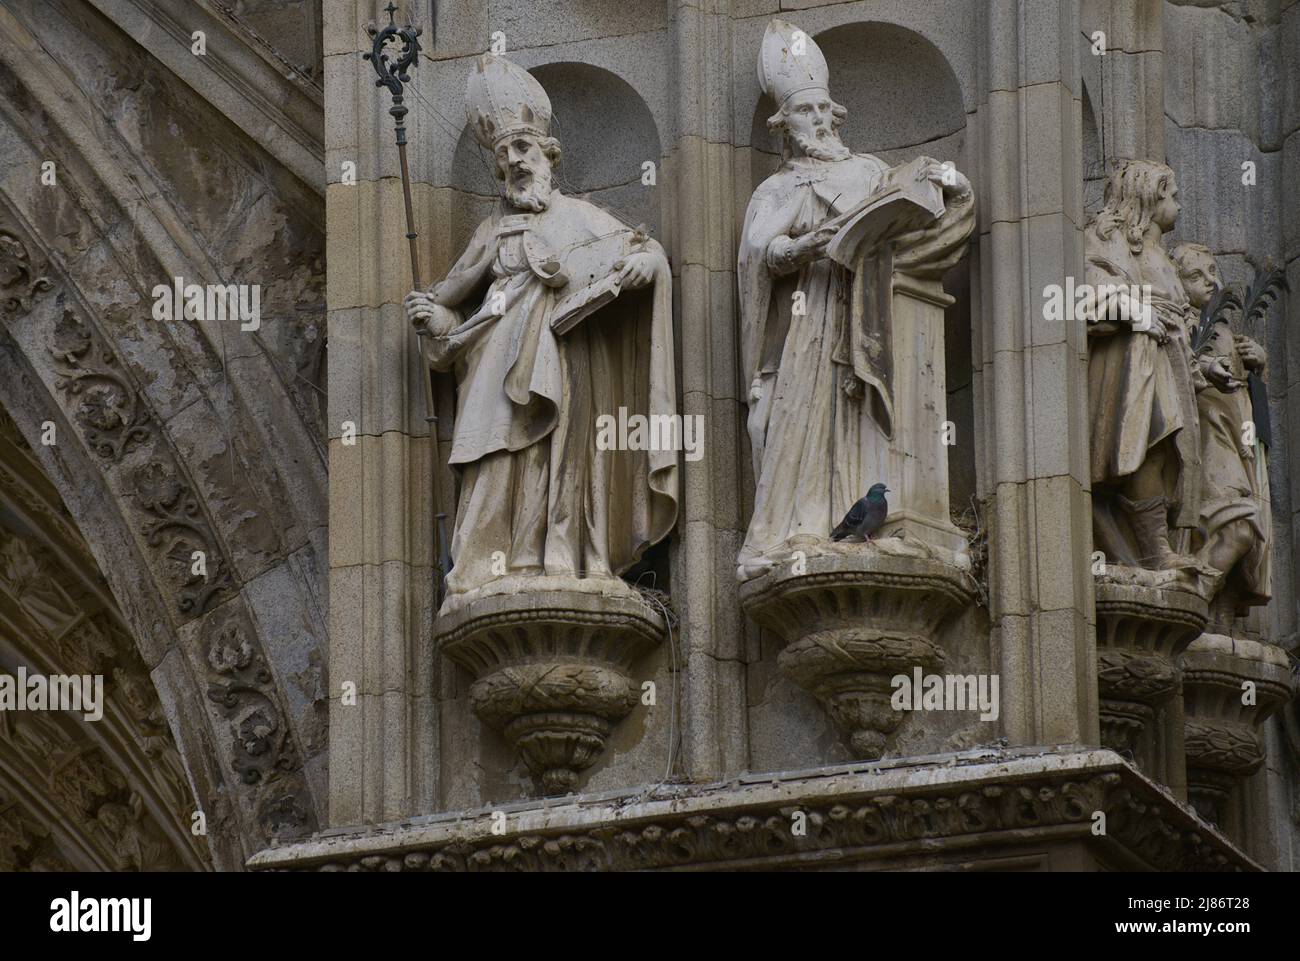 Spanien, Kastilien-La Mancha, Toledo. Kathedrale der Heiligen Maria. Erbaut im gotischen Stil zwischen 1227 und 1493. Skulpturen von Bischöfen und herausragenden Figuren an der Hauptfassade (auf einer Seite der Tür der Vergebung). Stockfoto